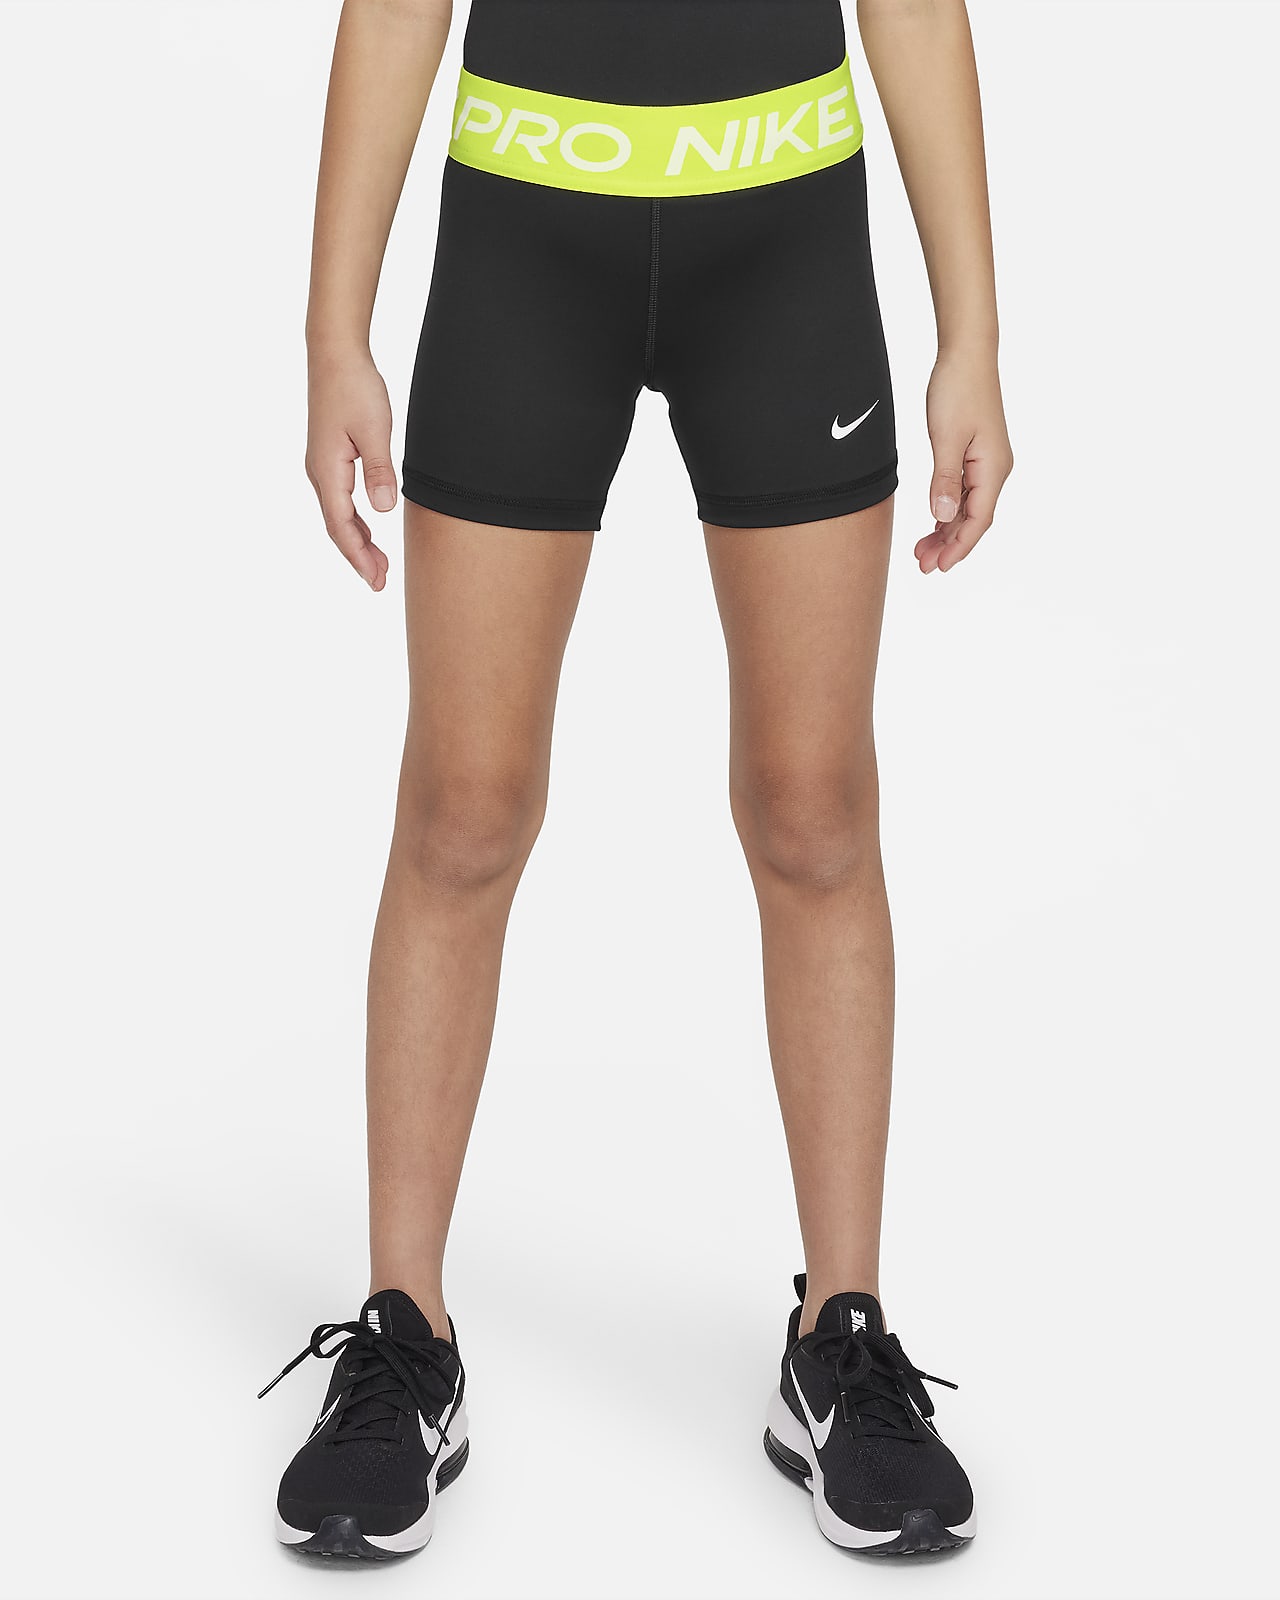 Calções Nike Pro Júnior (Rapariga)